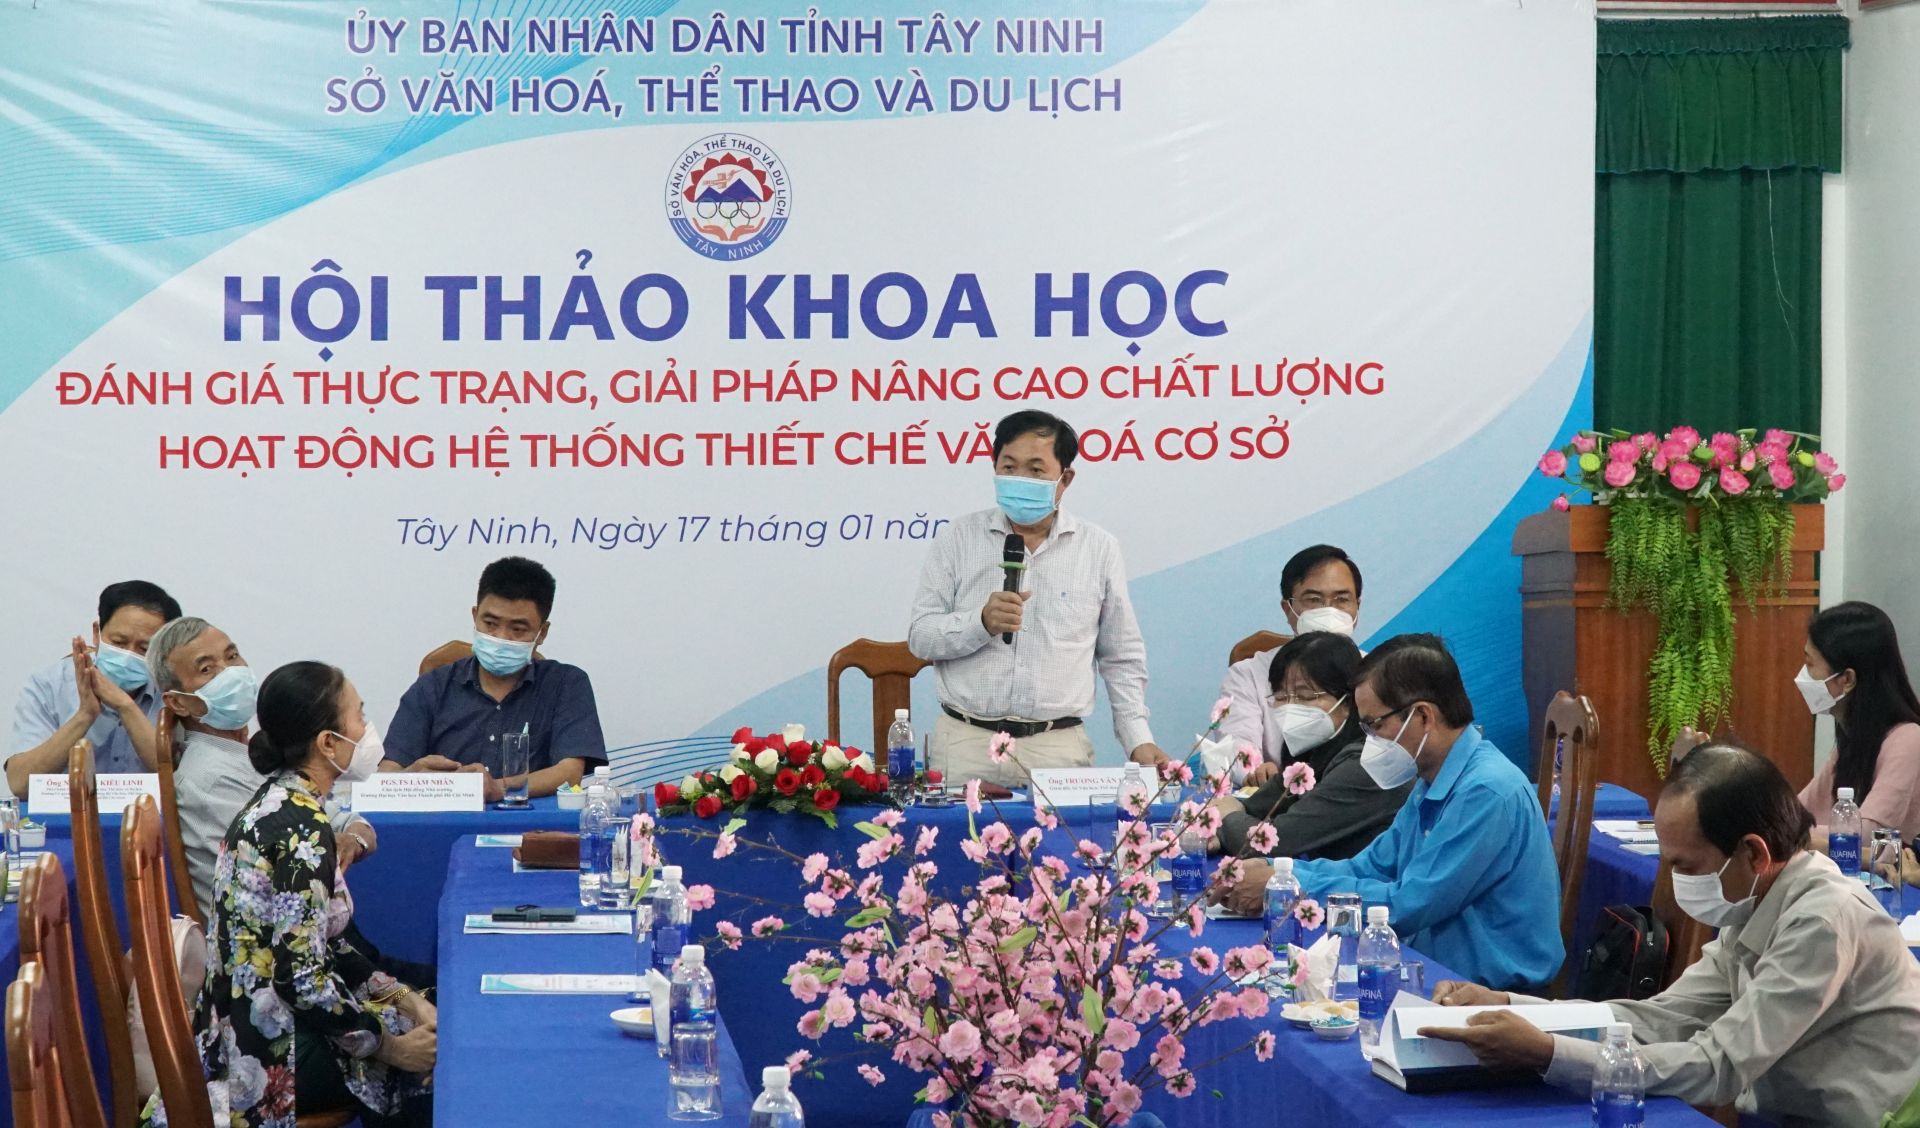 Điểm báo in Tây Ninh ngày 19.01.2022